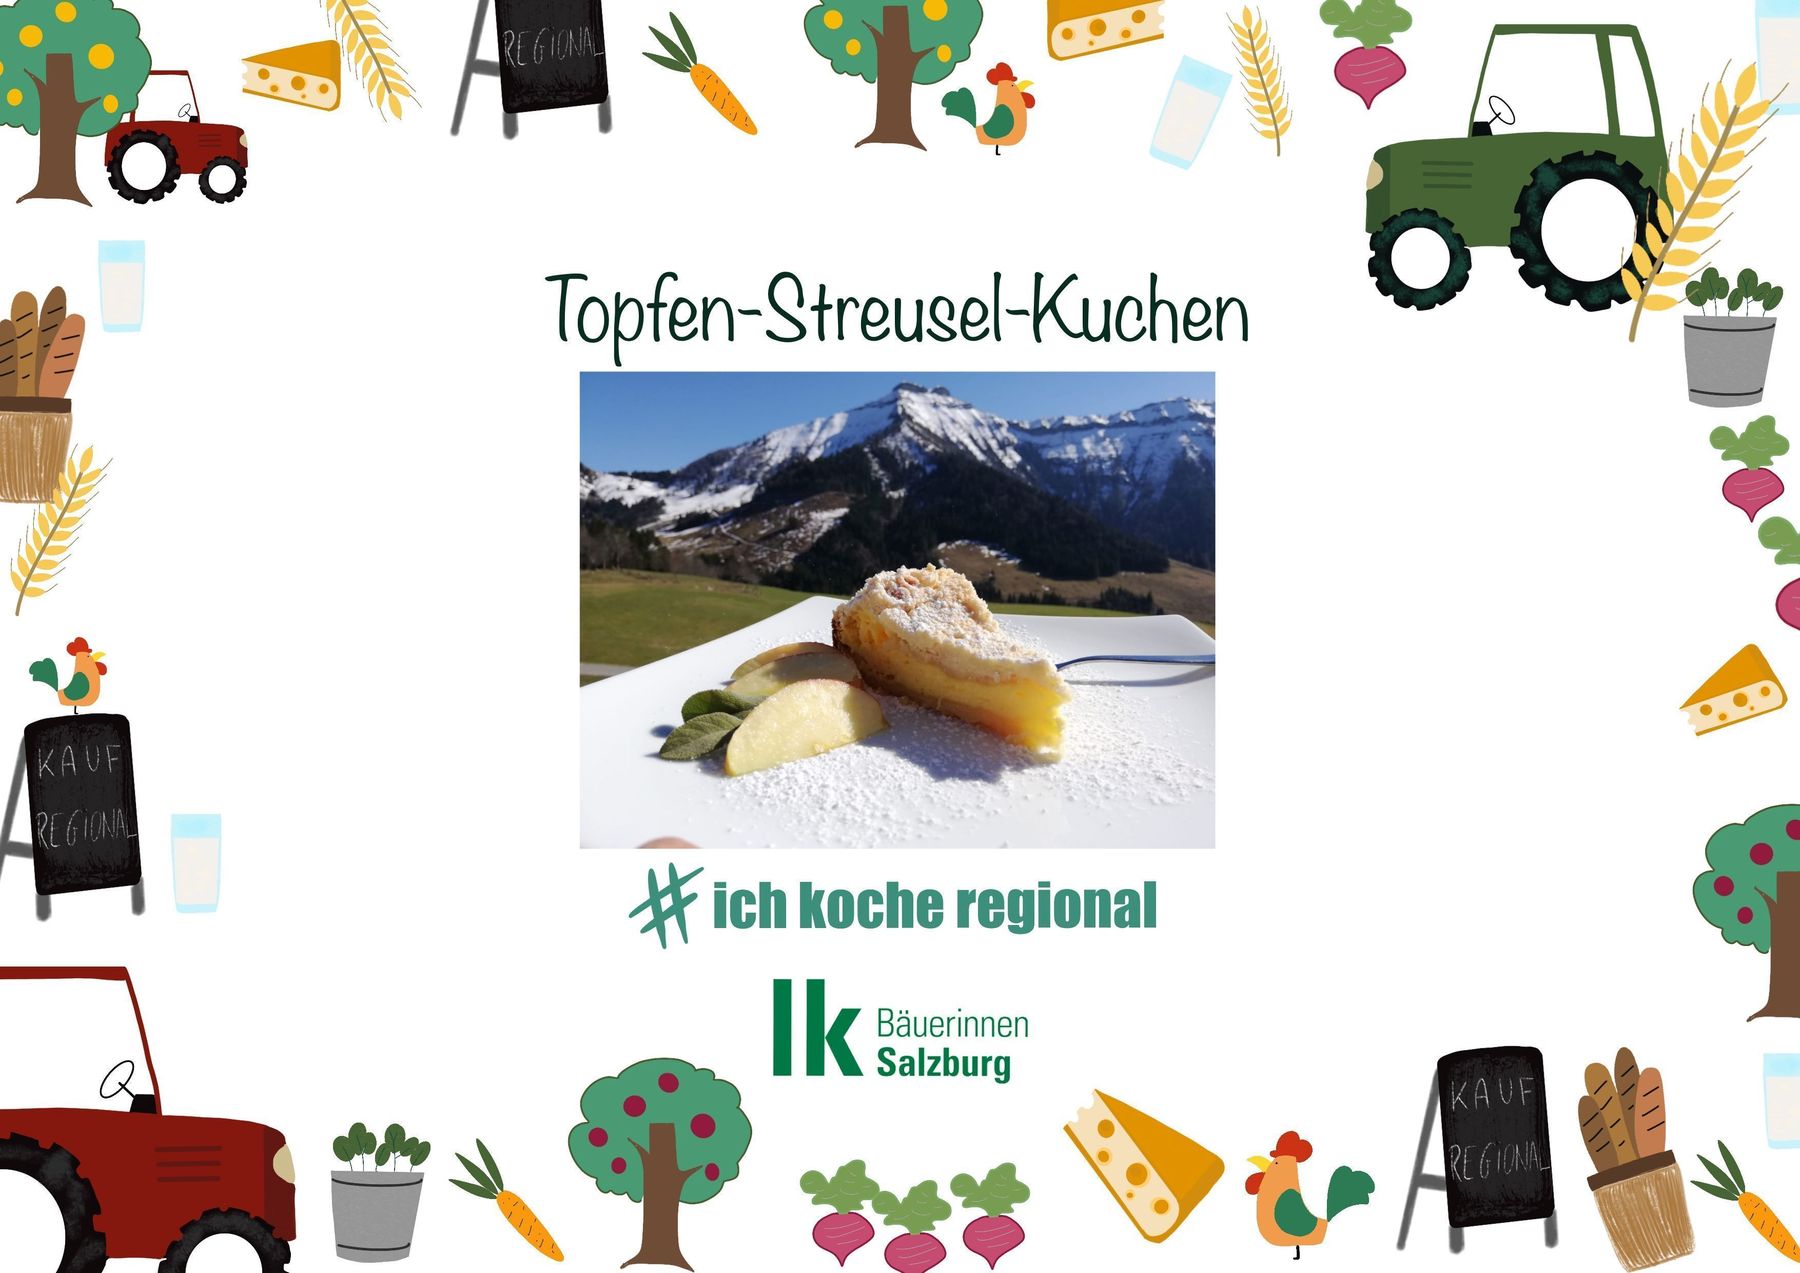 Topfen-Streusel-Kuchen1 © lk salzburg